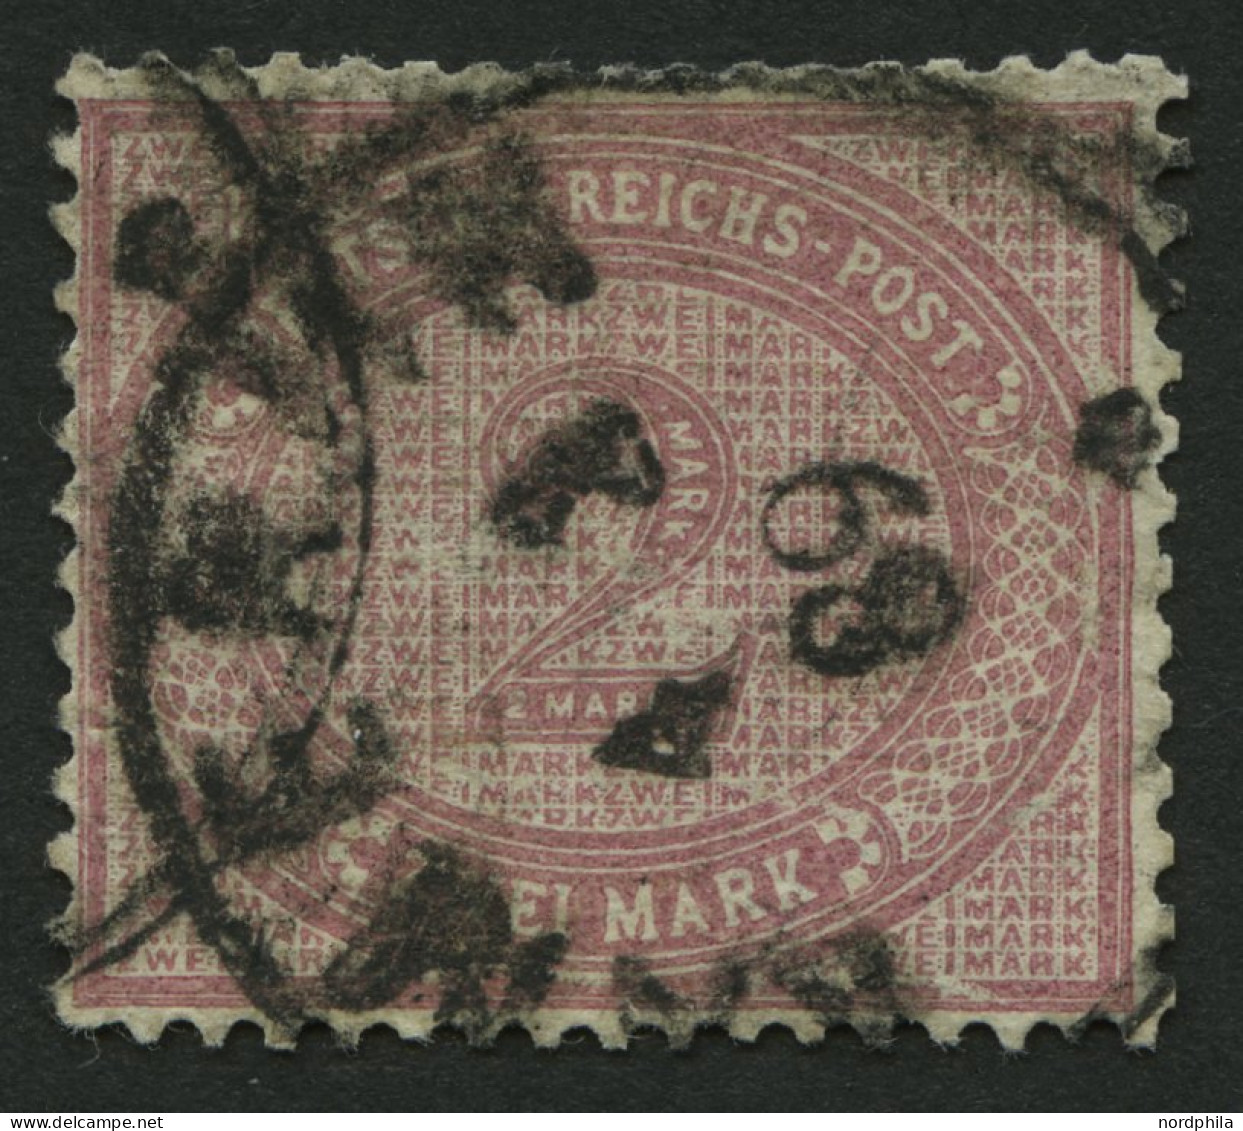 KAMERUN V 37c O, 1887, 2 M. Mittelrosalila, Stempel KAMERUN 4.1.89, Oben Einige Verkürzte Zähne Sonst Farbfrisches Prach - Kameroen